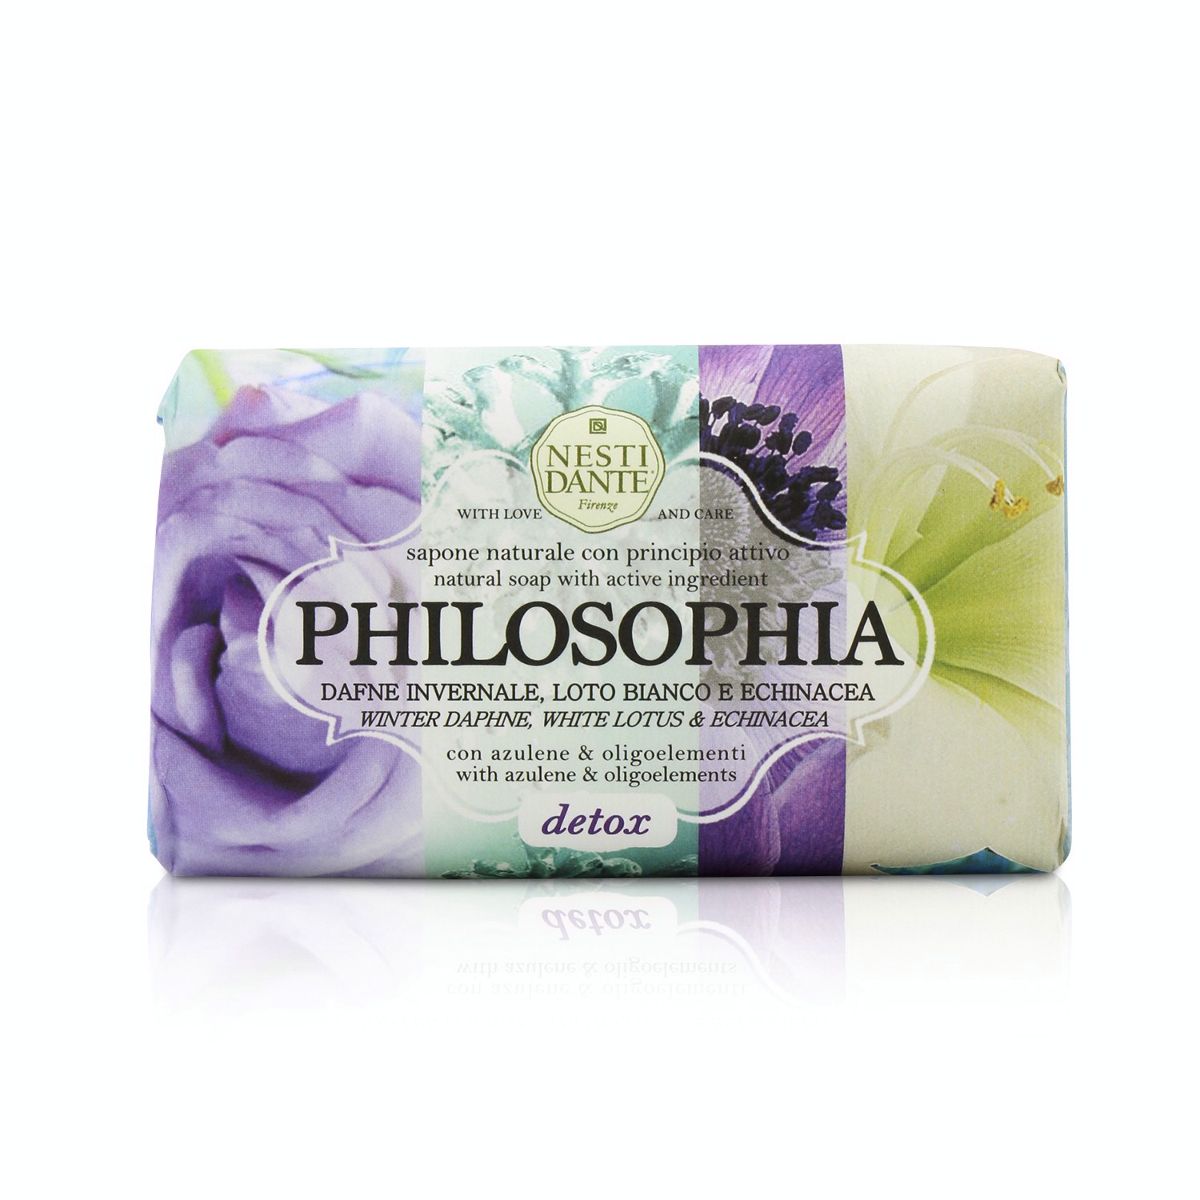 Philosophia Natural Soap - Detox - Winter Daphne White Lotus  Echinacea With Azulene  Oligoelements Nesti Dante Image